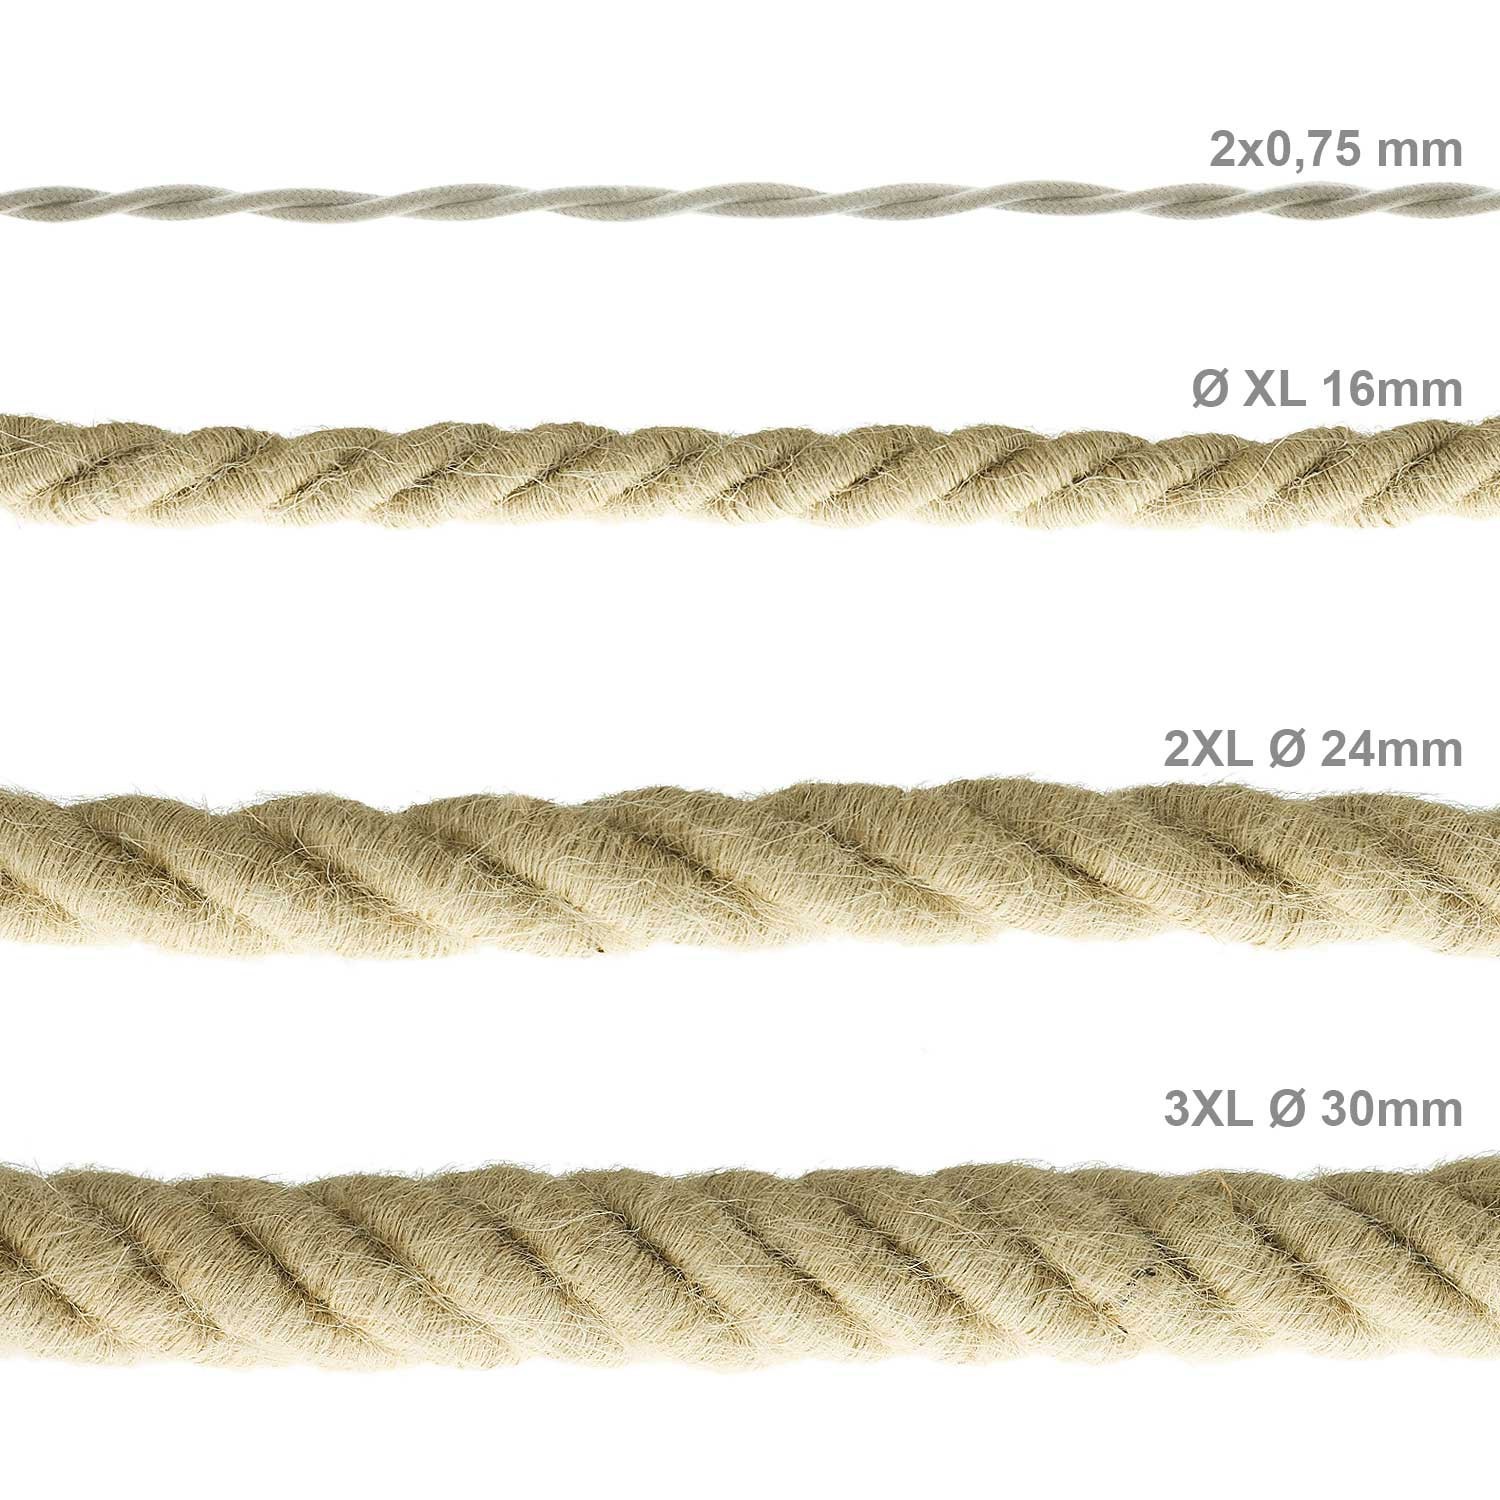 Cordón 3XL, cable eléctrico 3x0,75, recubierto en yute en bruto. Diámetro: 30mm.